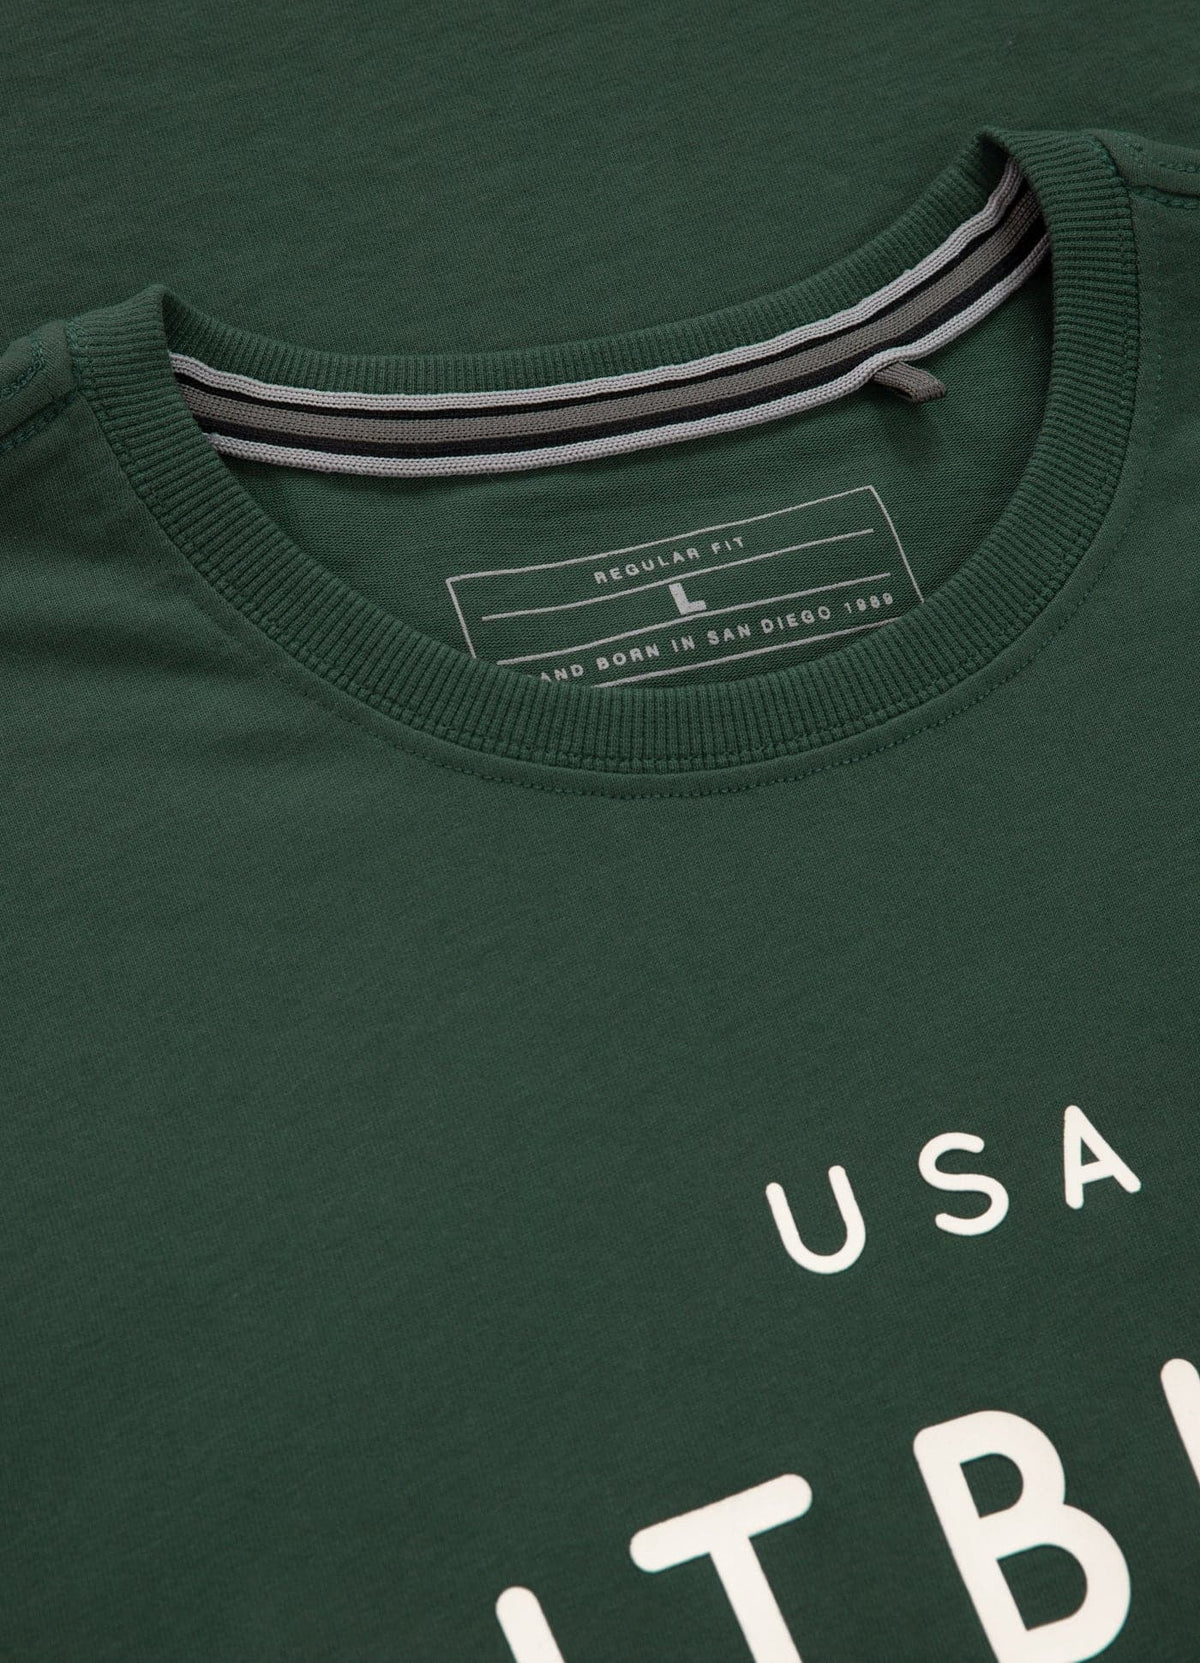 USA CAL Green T-shirt - Pitbullstore.eu